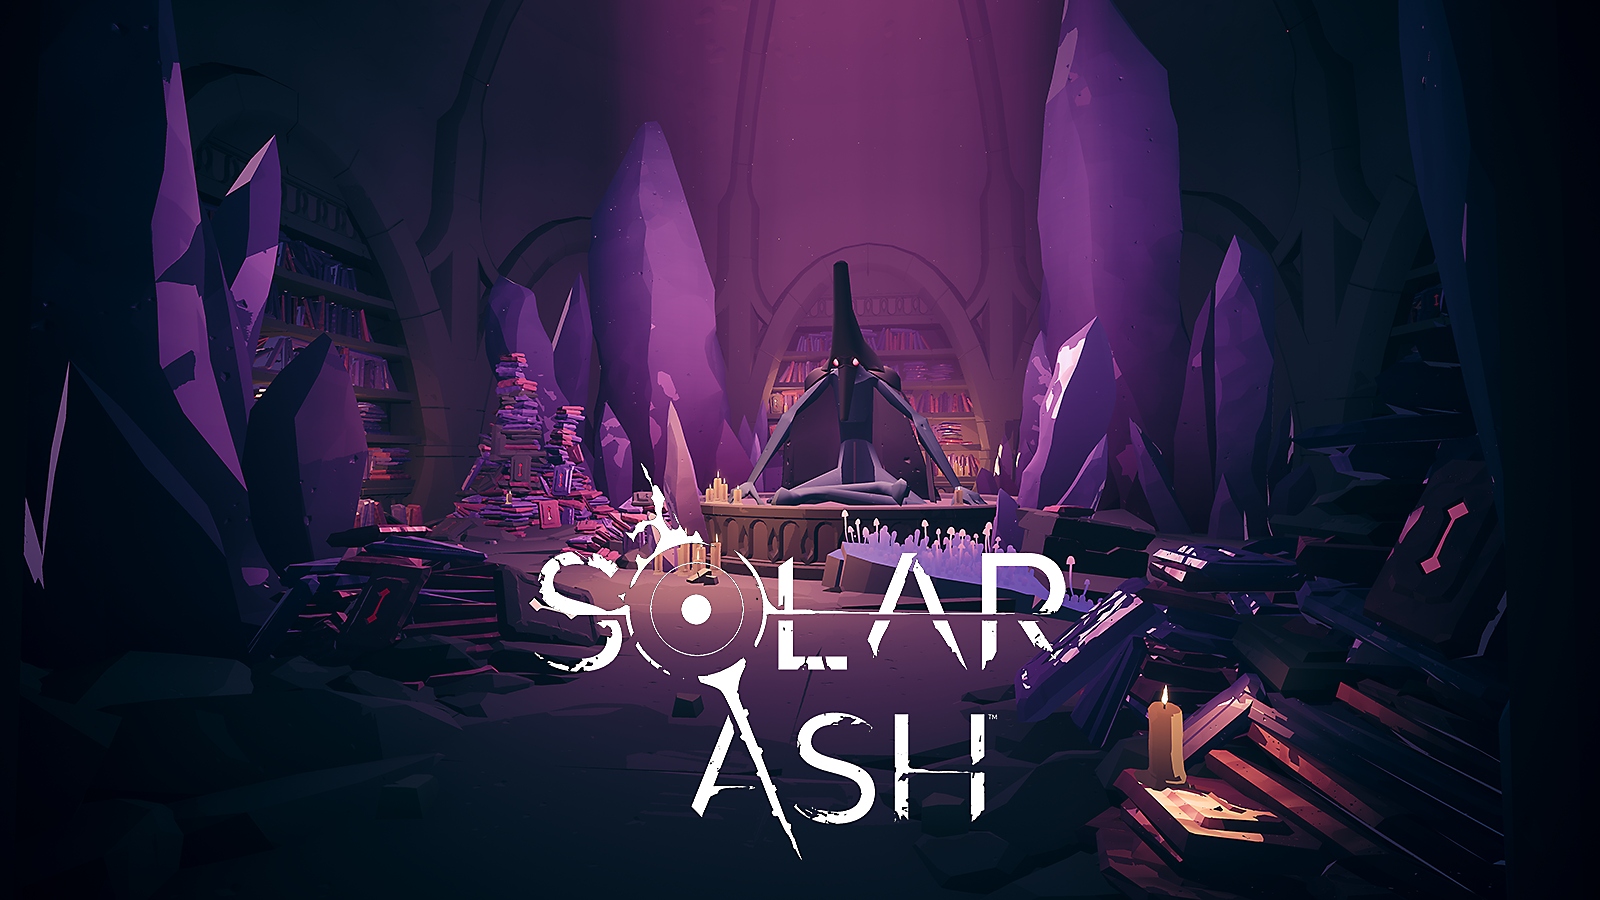 Trailer de Solar Ash